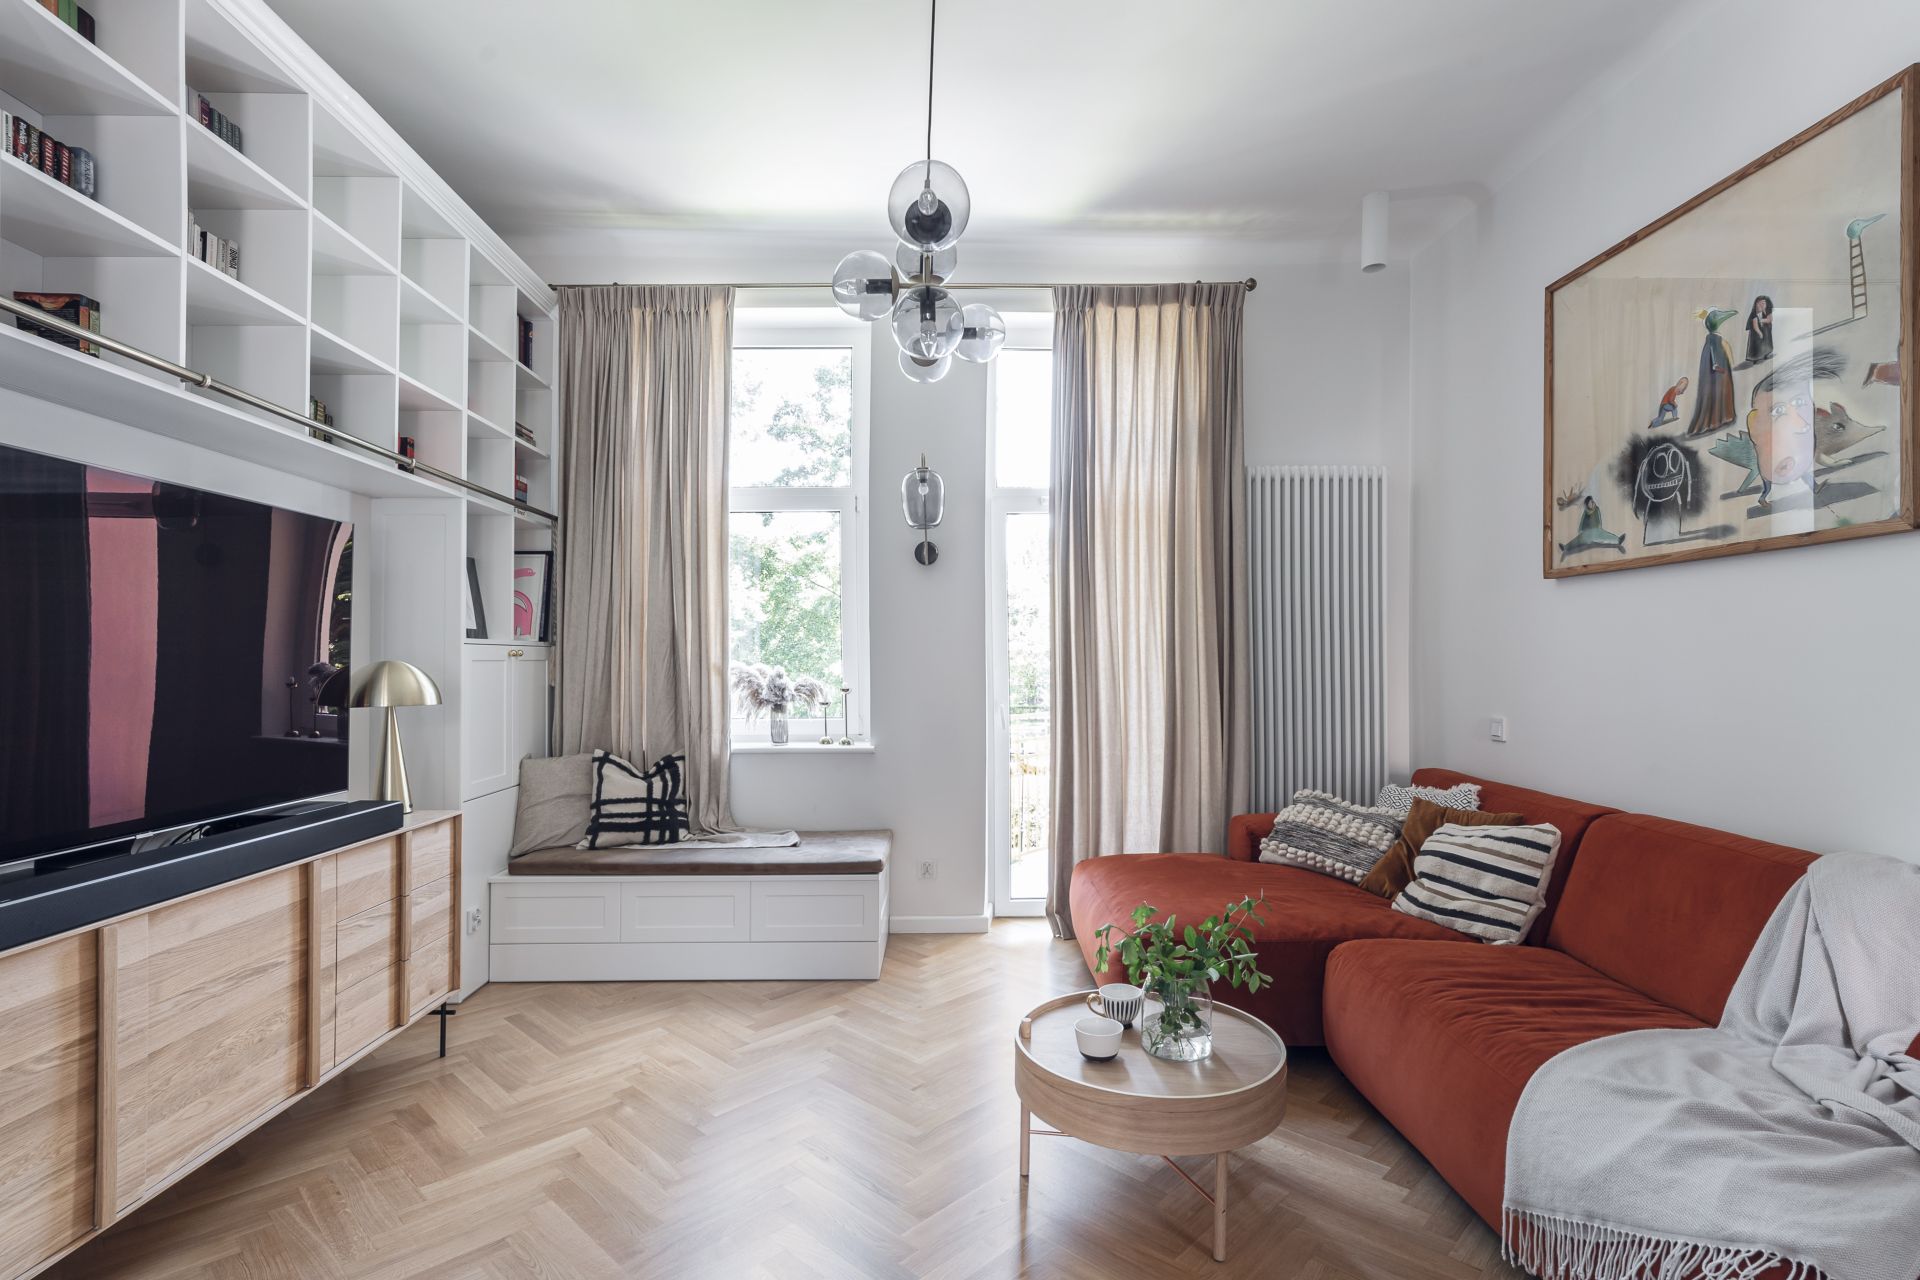 Piękny salon w mieszkaniu w Sopocie. Podłoga w jodełkę i białe ściany w salonie! Projekt Studio Loko. Fot. Jakub Henke @Kunioski